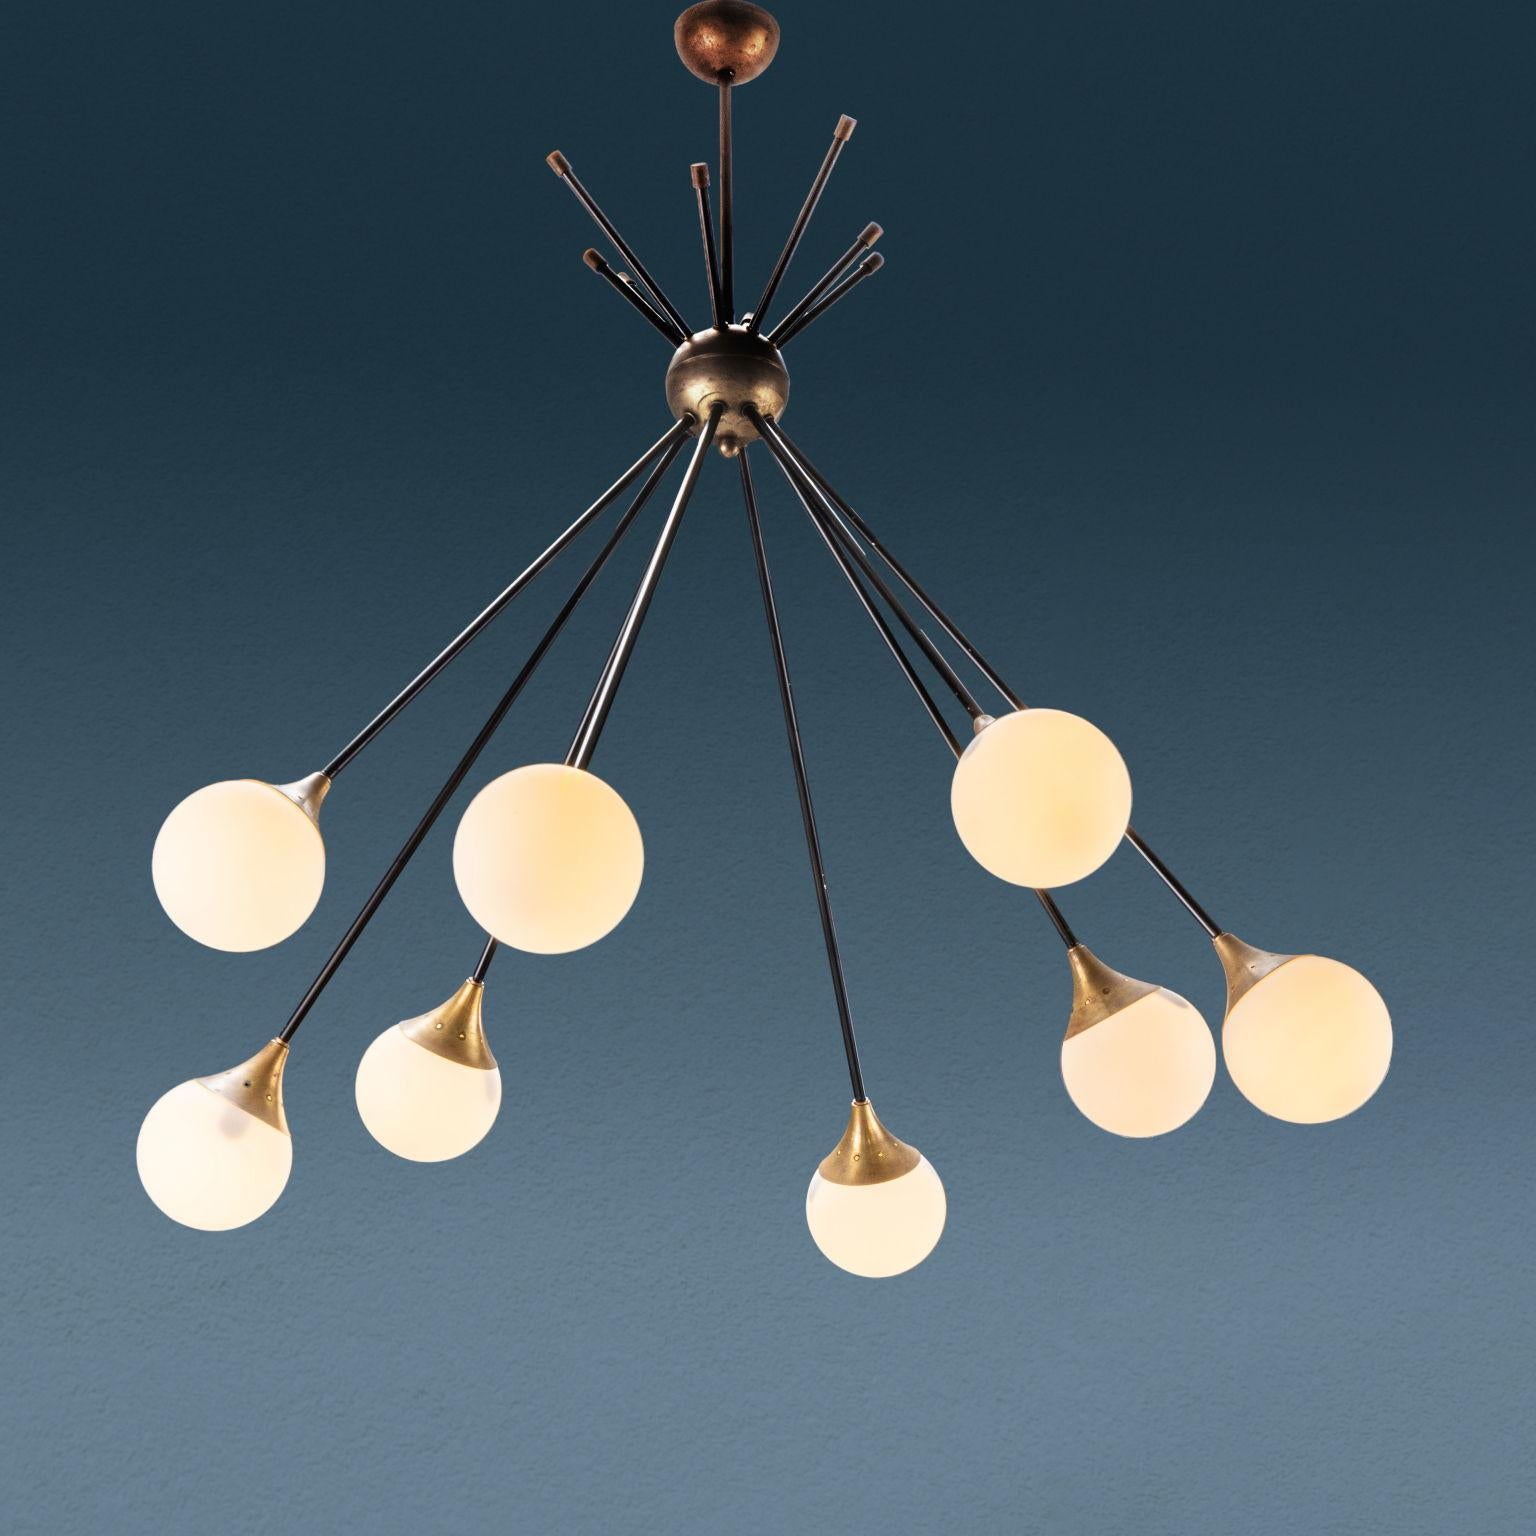 Raffinato lampadario realizzato negli anni '50 '60 ad otto punti luce con struttura tipo sputnik in ottone e paralumi in vetro opalino.
Di manifattura italiana, ricorda le eleganti produzioni Stilnovo.